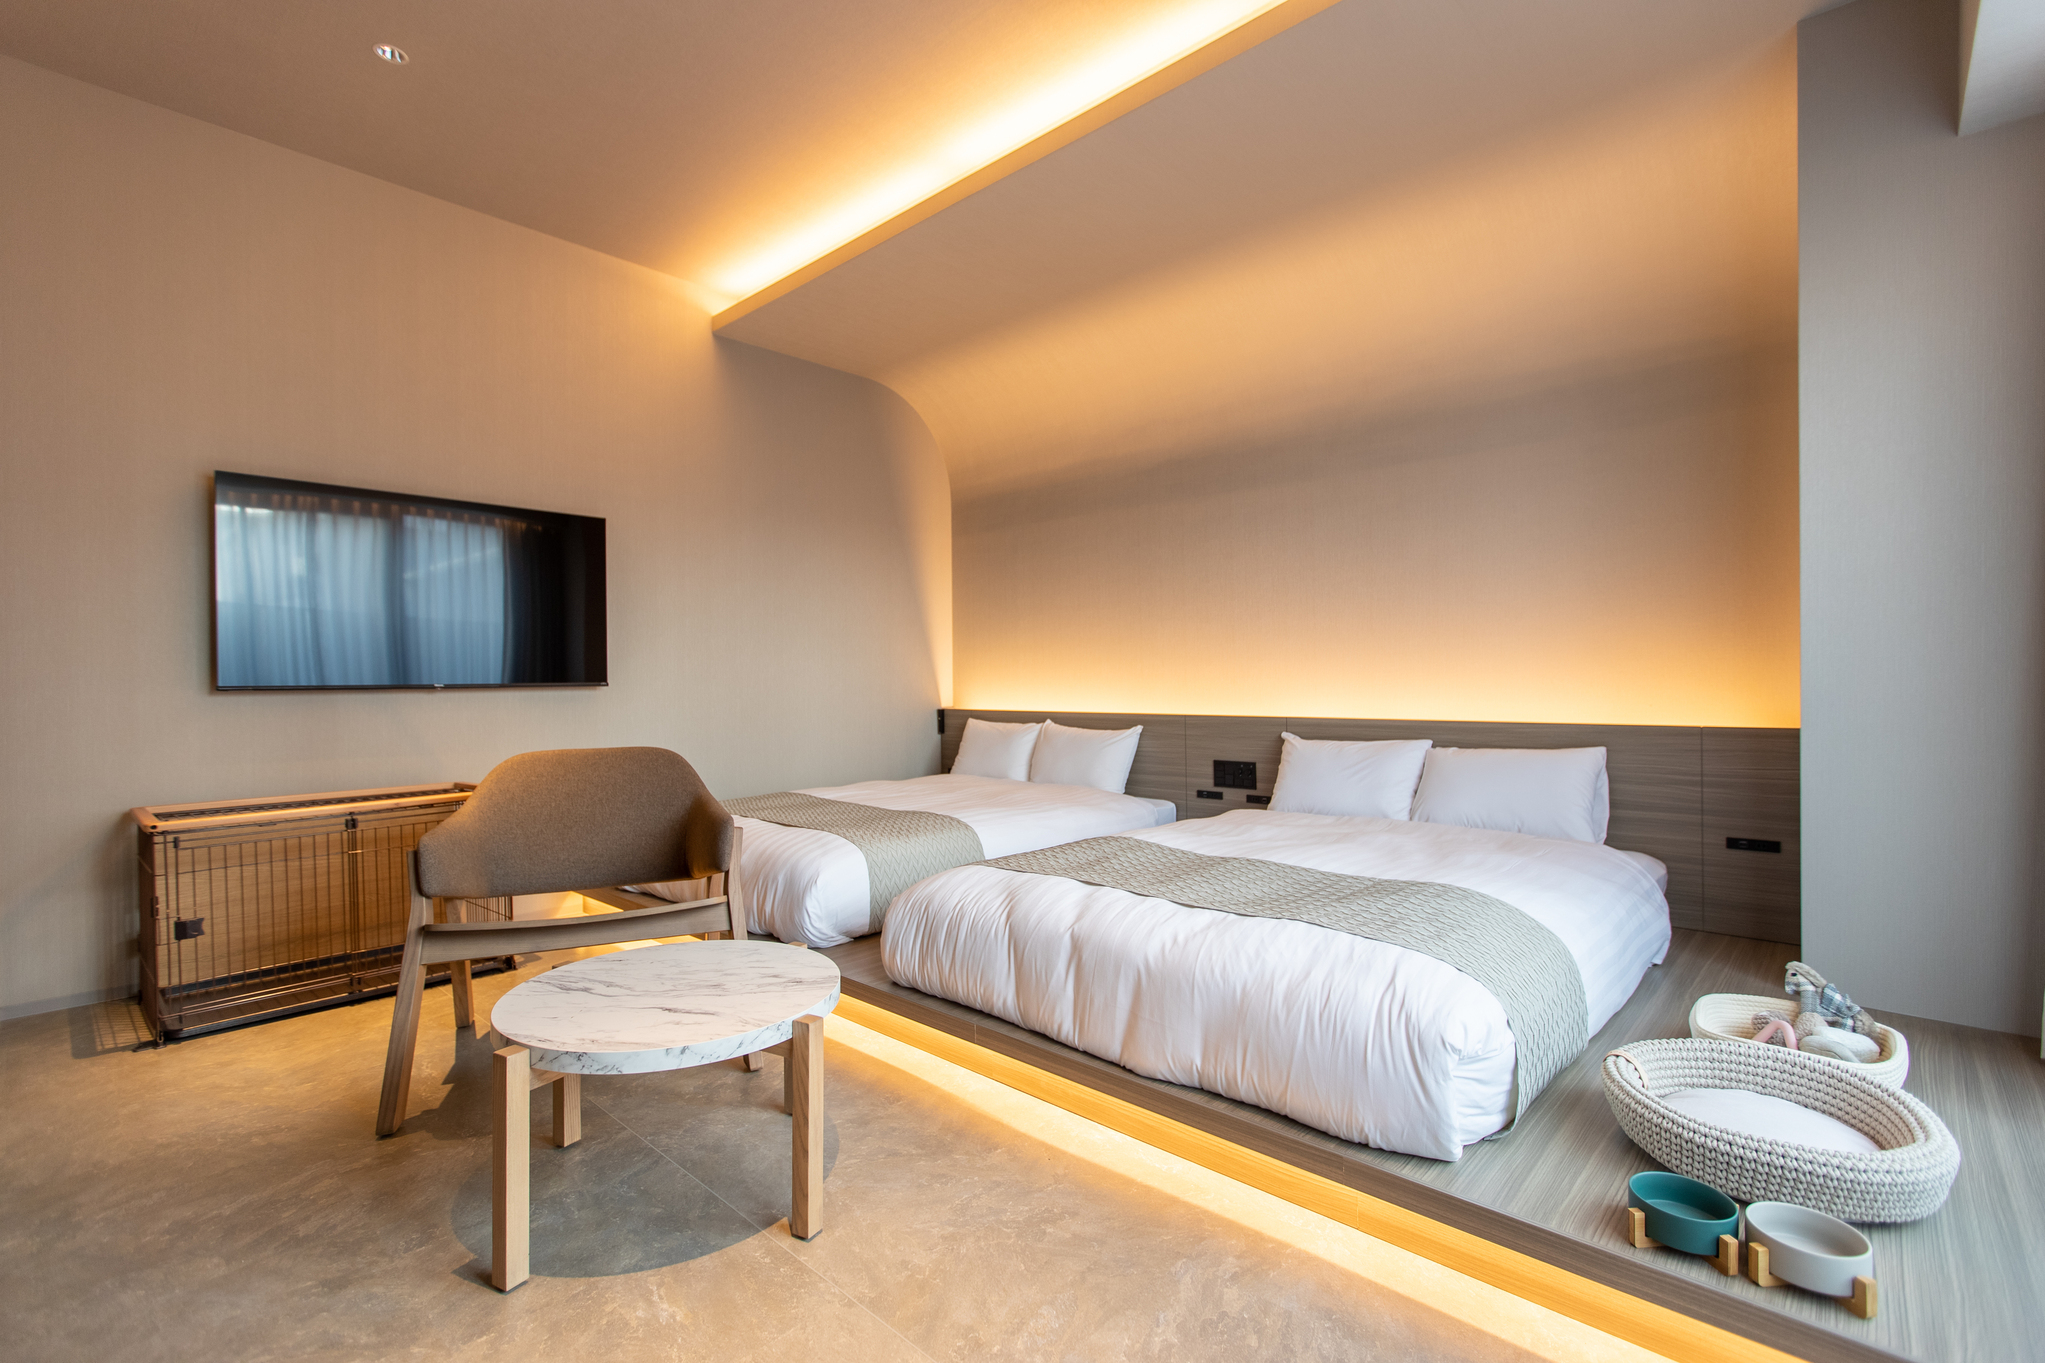 北海道・函館にペットフレンドリールームを併設した「FAV HOTEL」がオープン